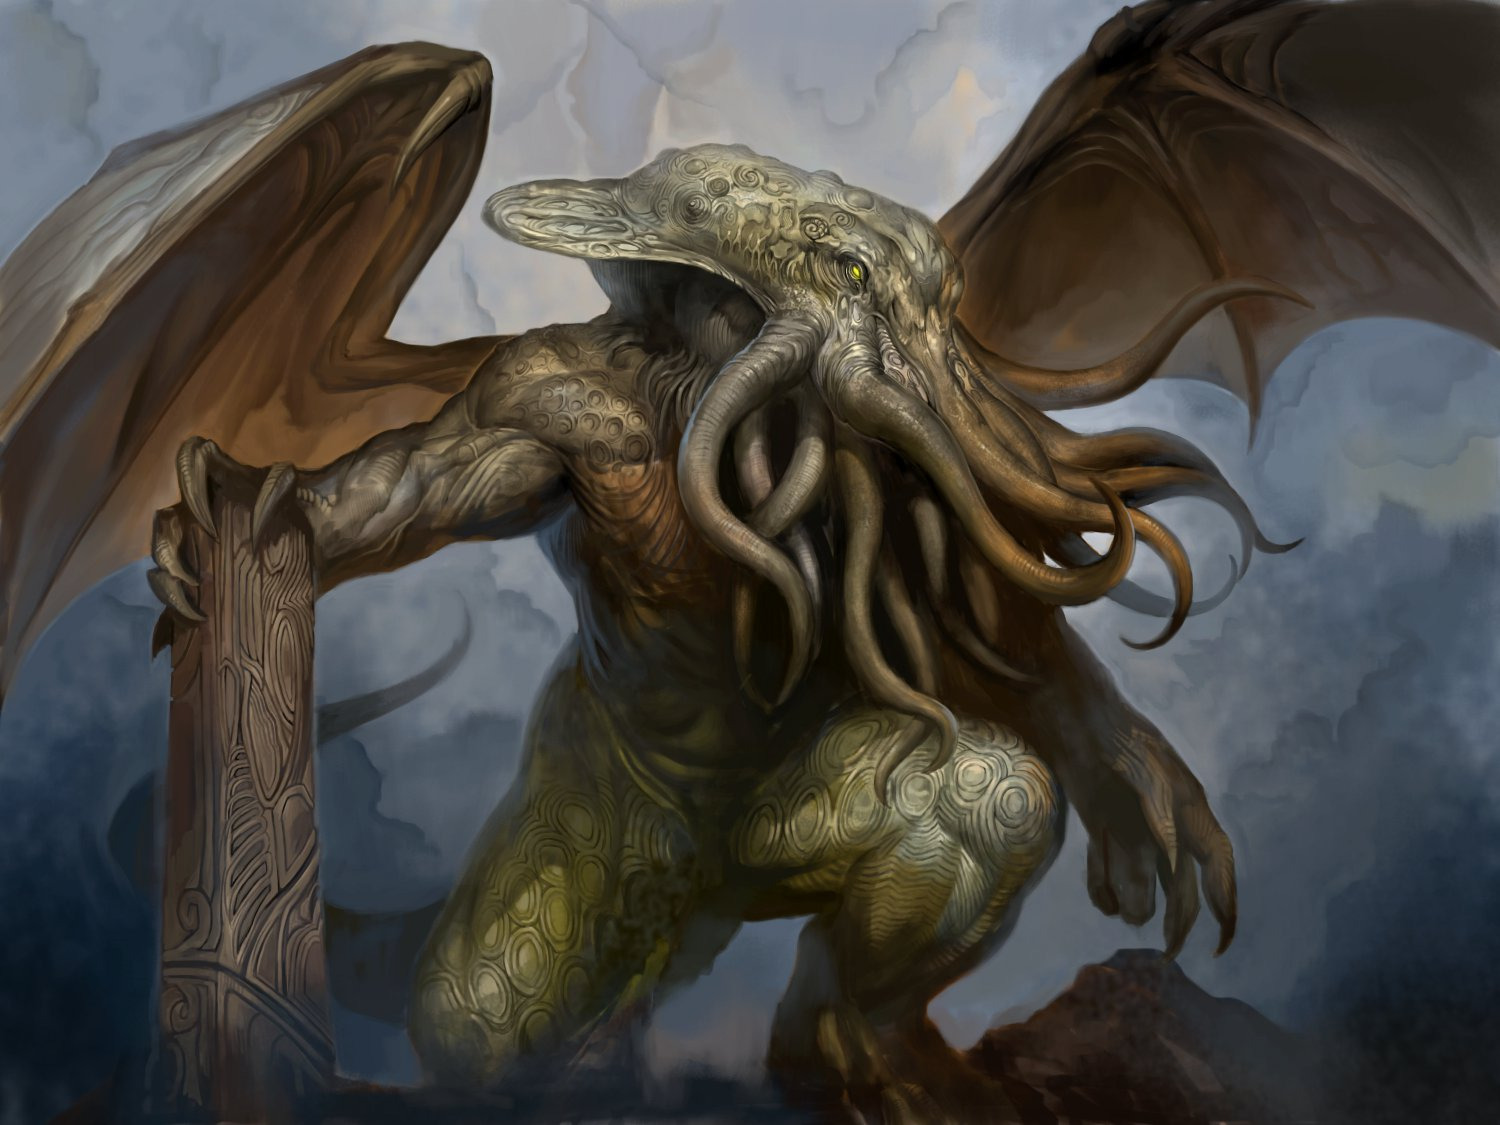 Los Dioses de Lovecraft  y sus criaturas Cthulhu